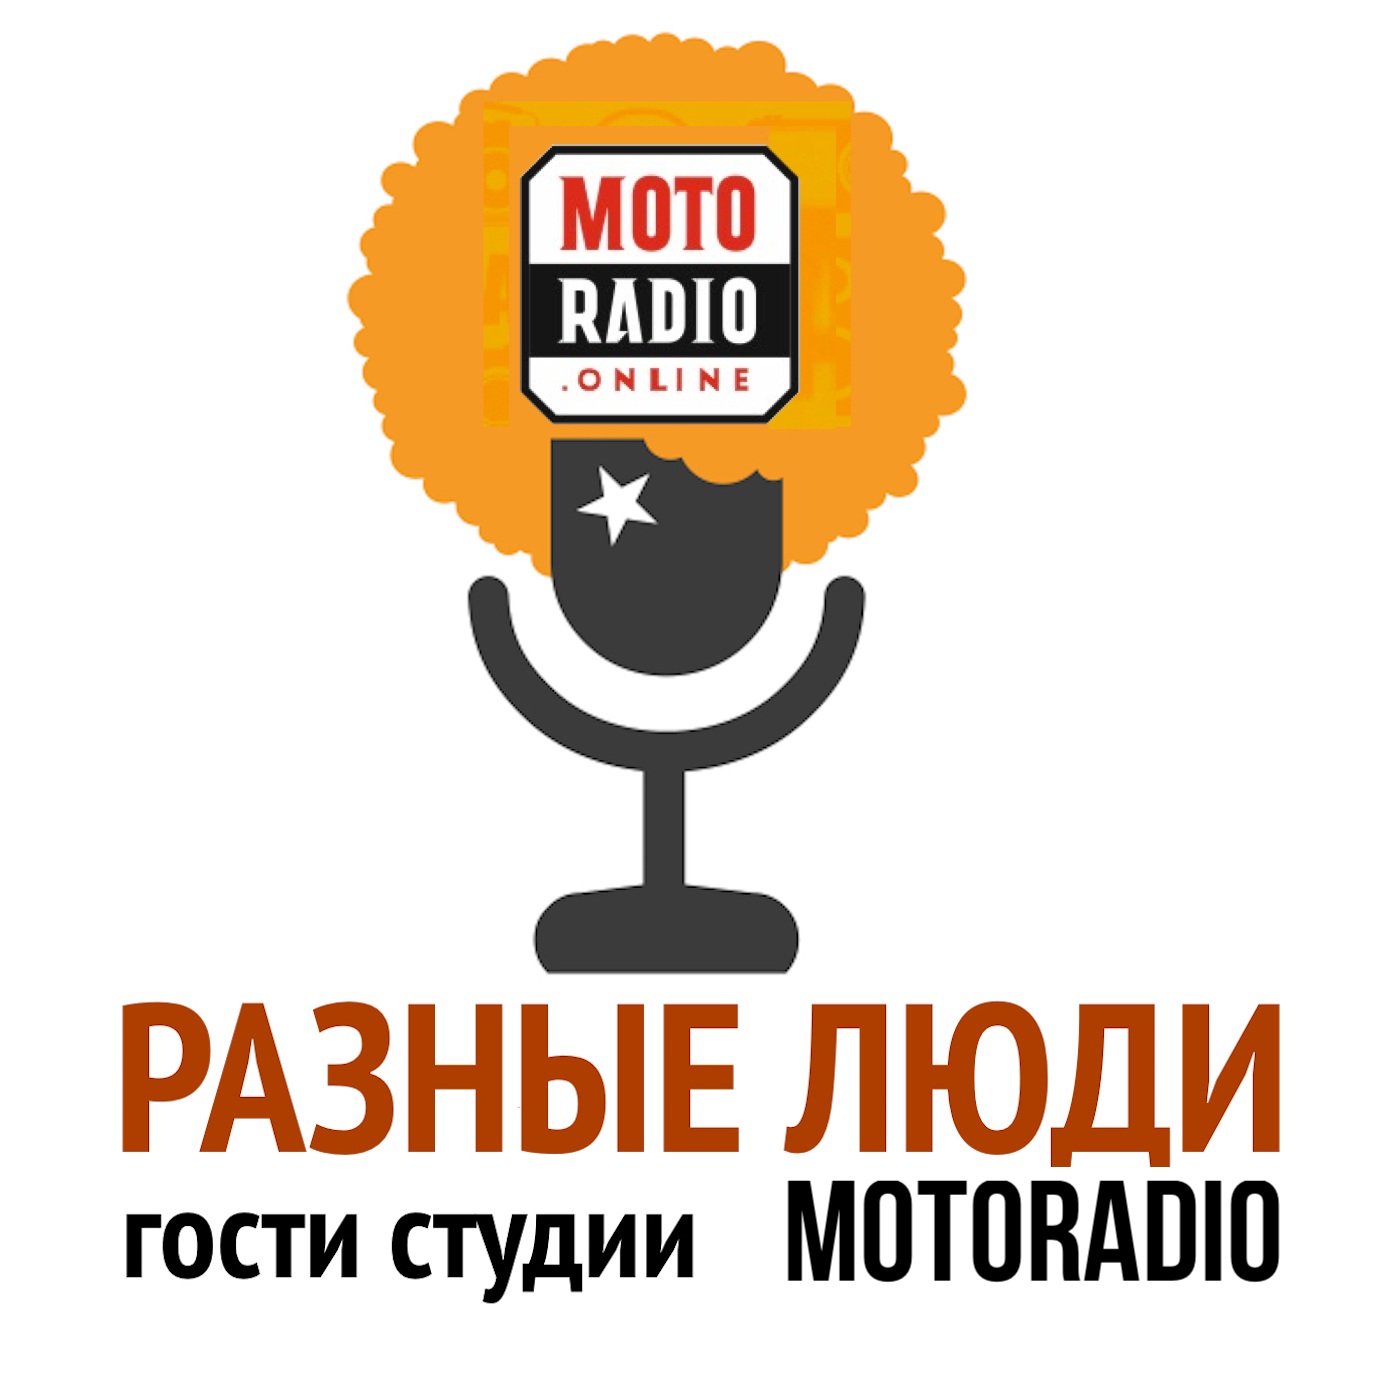 Моторадио Лариса Гергиева, руководитель «Академии молодых певцов» Мариинского театра дала интервью Imagine Radio.